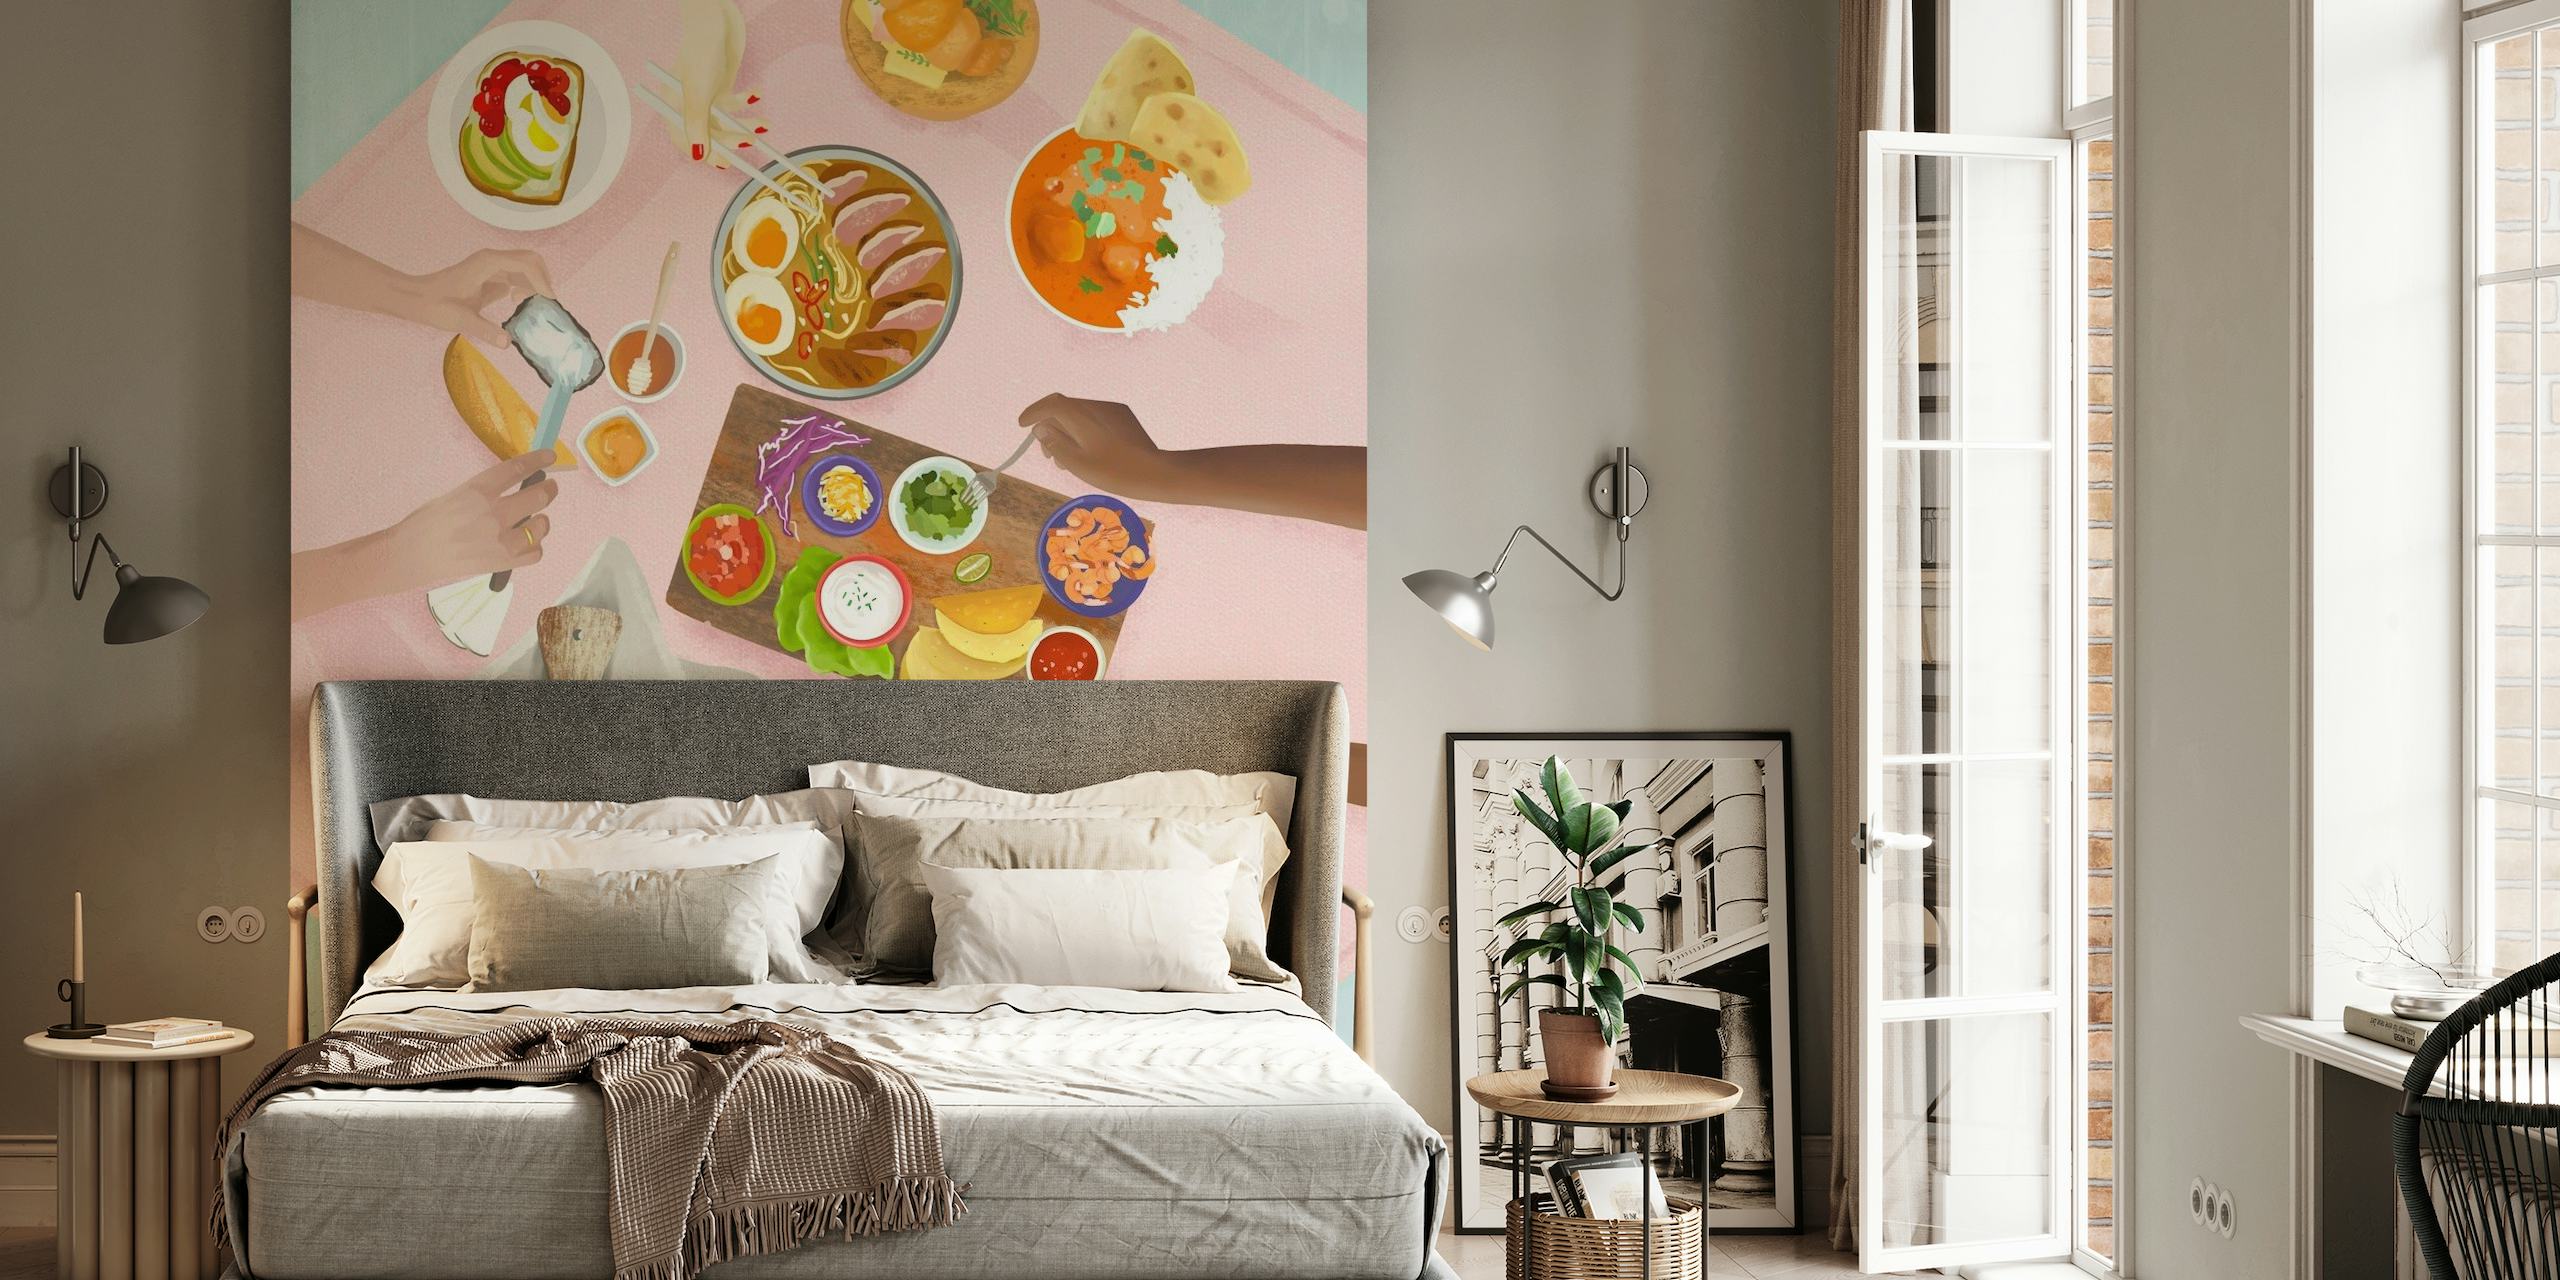 Mural de parede ilustrado com tema de brunch e vista aérea da mesa de jantar com vários pratos e flores